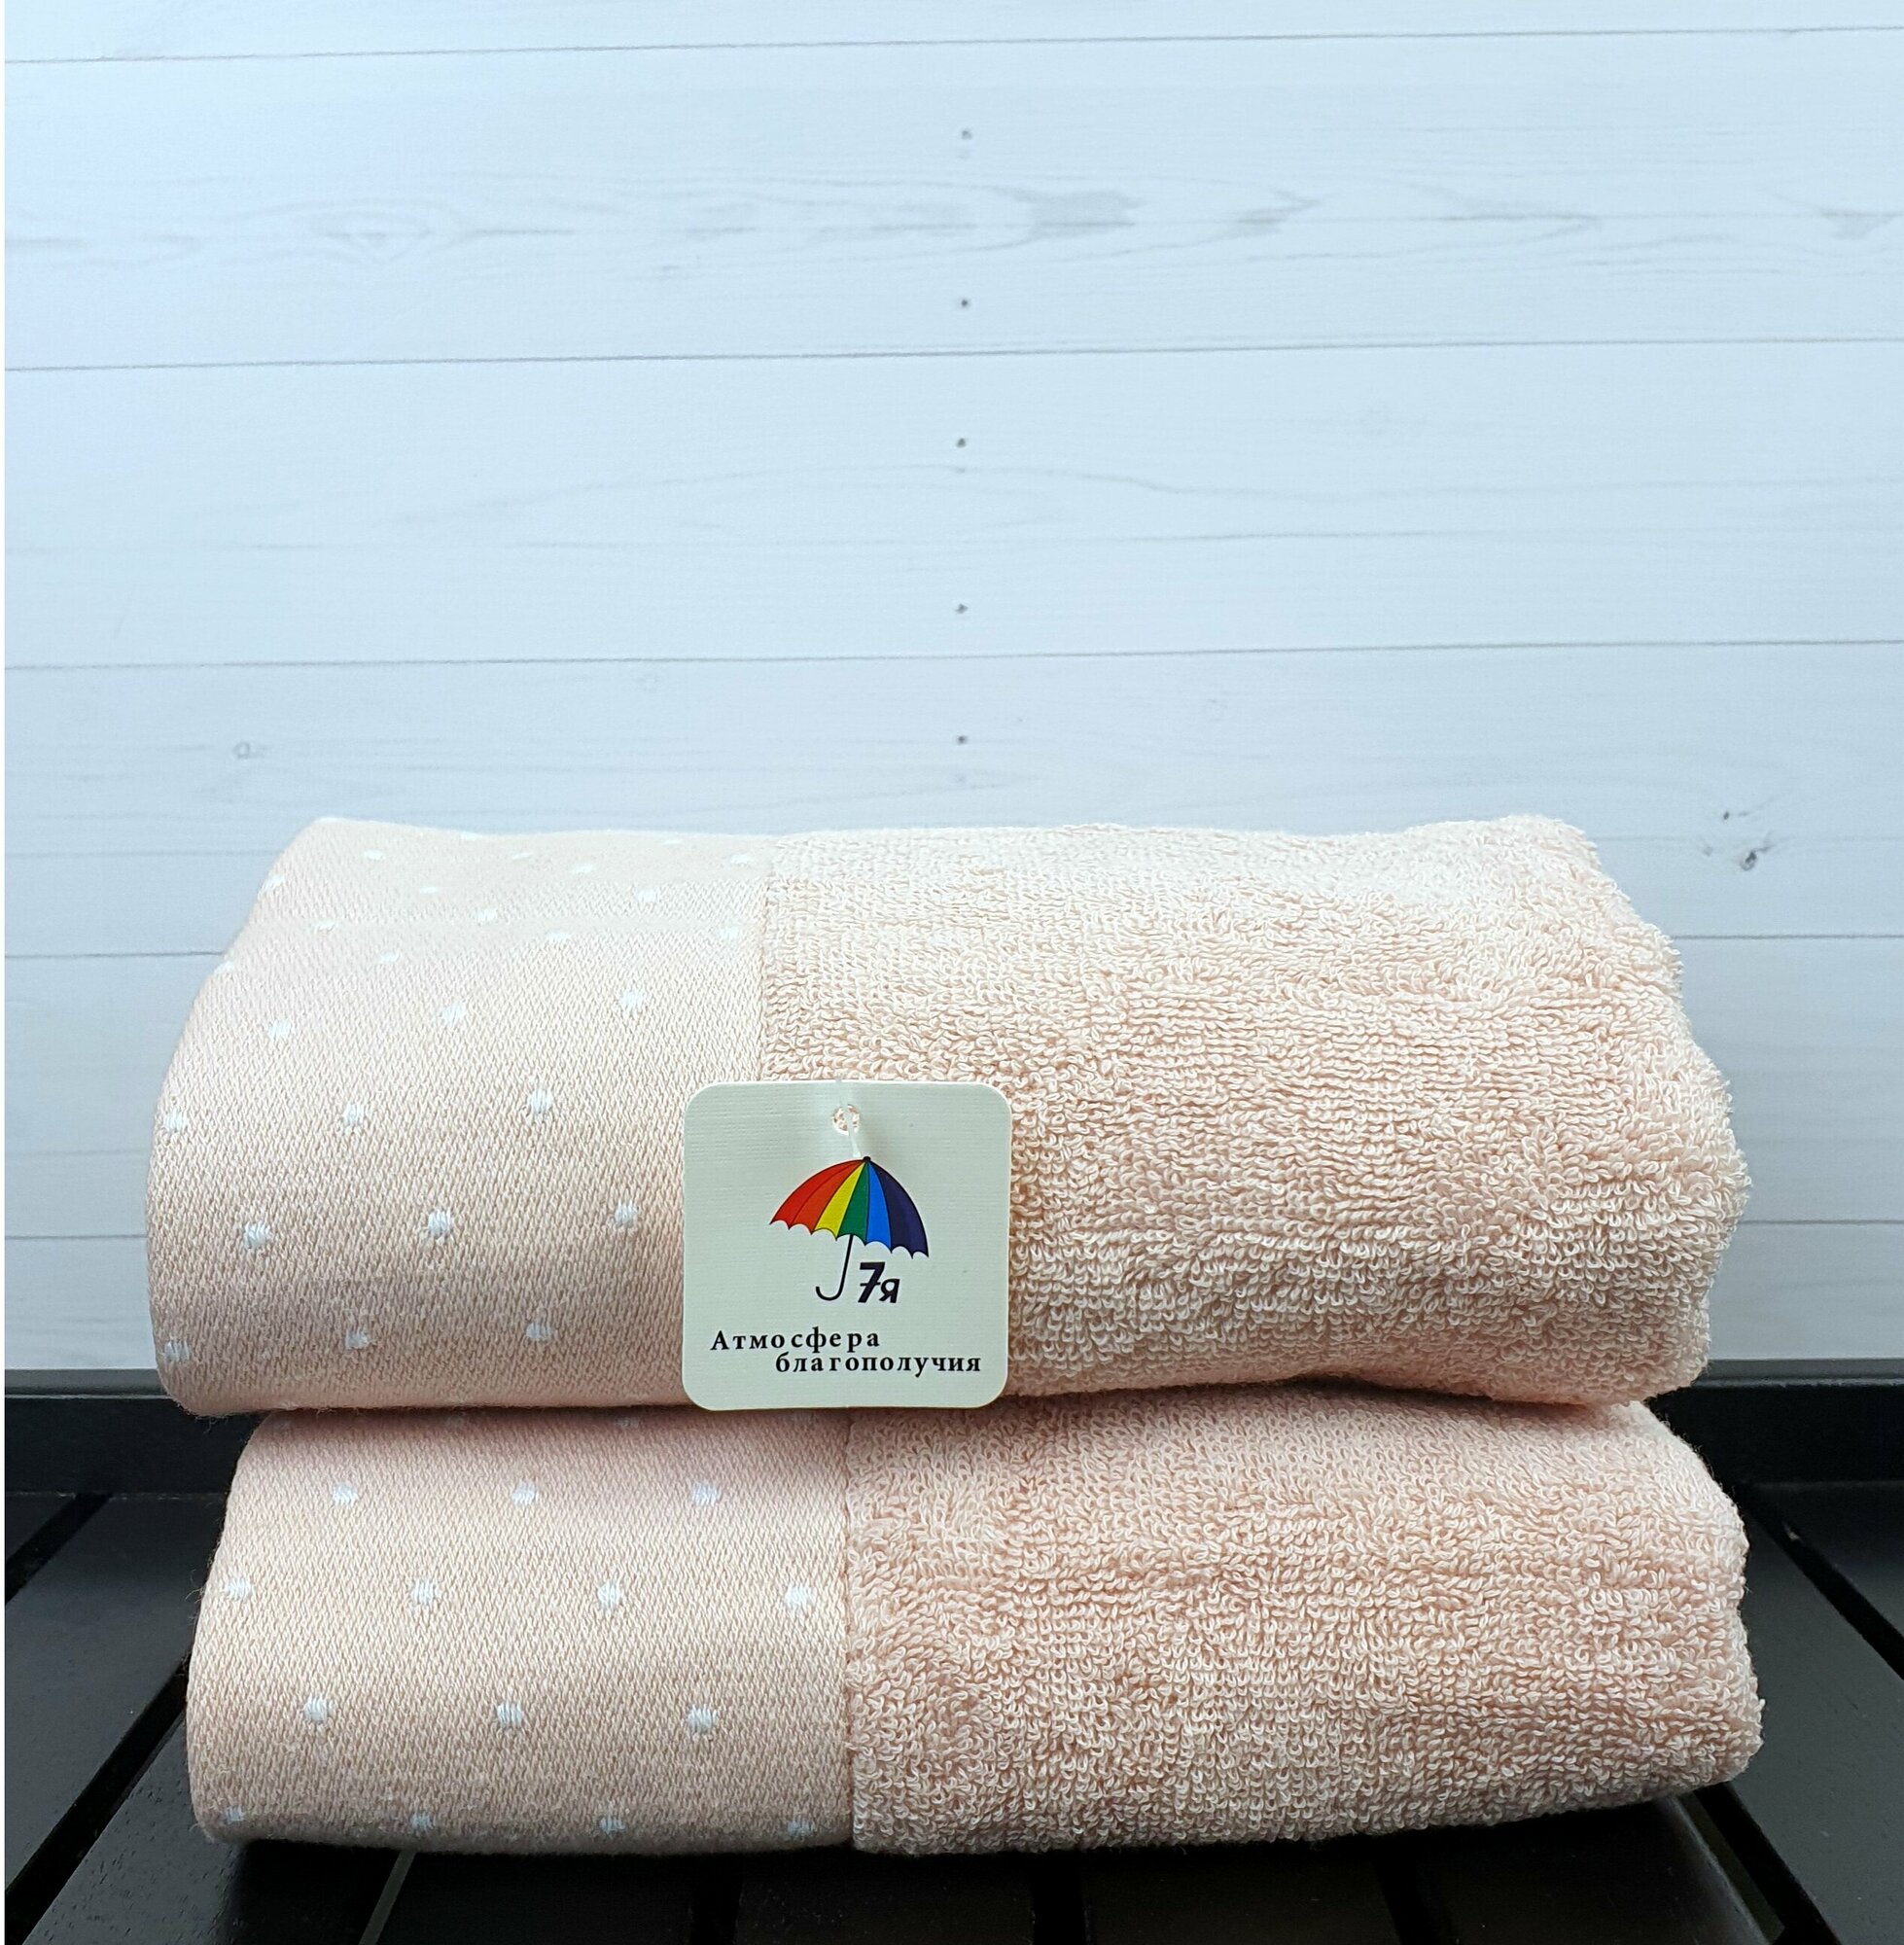 Полотенце банное для лица, рук махровое 50х90 см однотонное с бордюром в точечку, хлопок, 7Я текстиль, светло-розовый